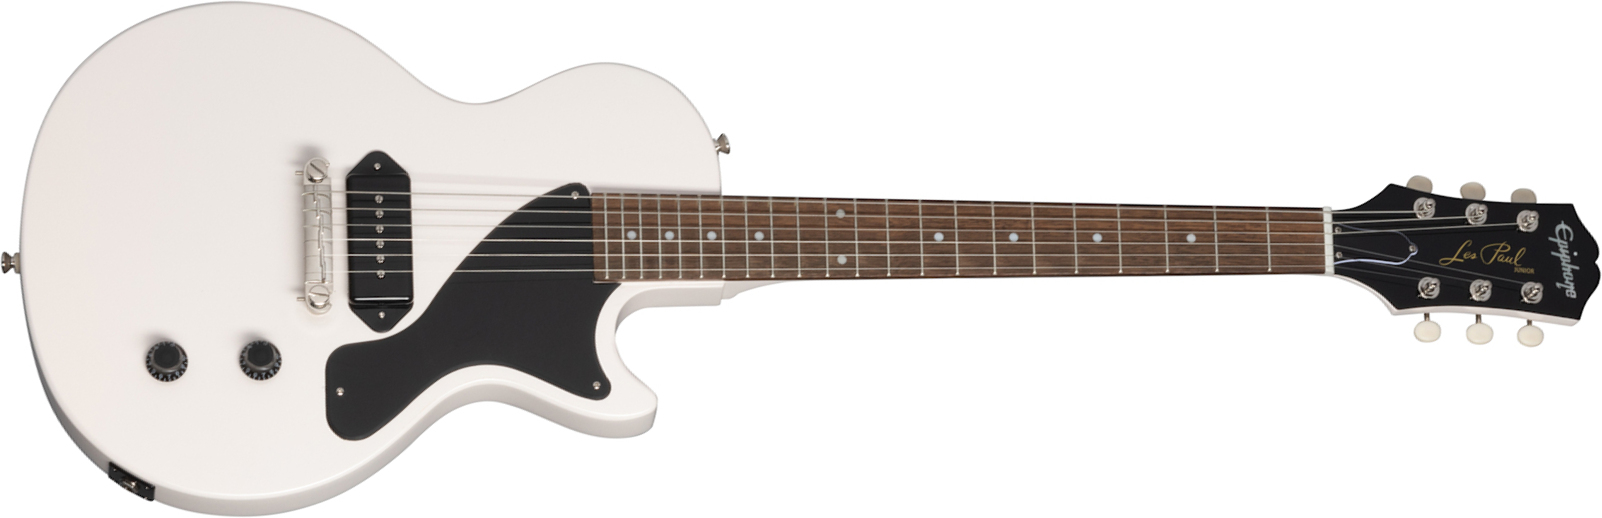 Epiphone Billie Joe Armstrong Les Paul Junior Signature S P90 Ht Lau - Classic White - Guitarra eléctrica de corte único. - Main picture